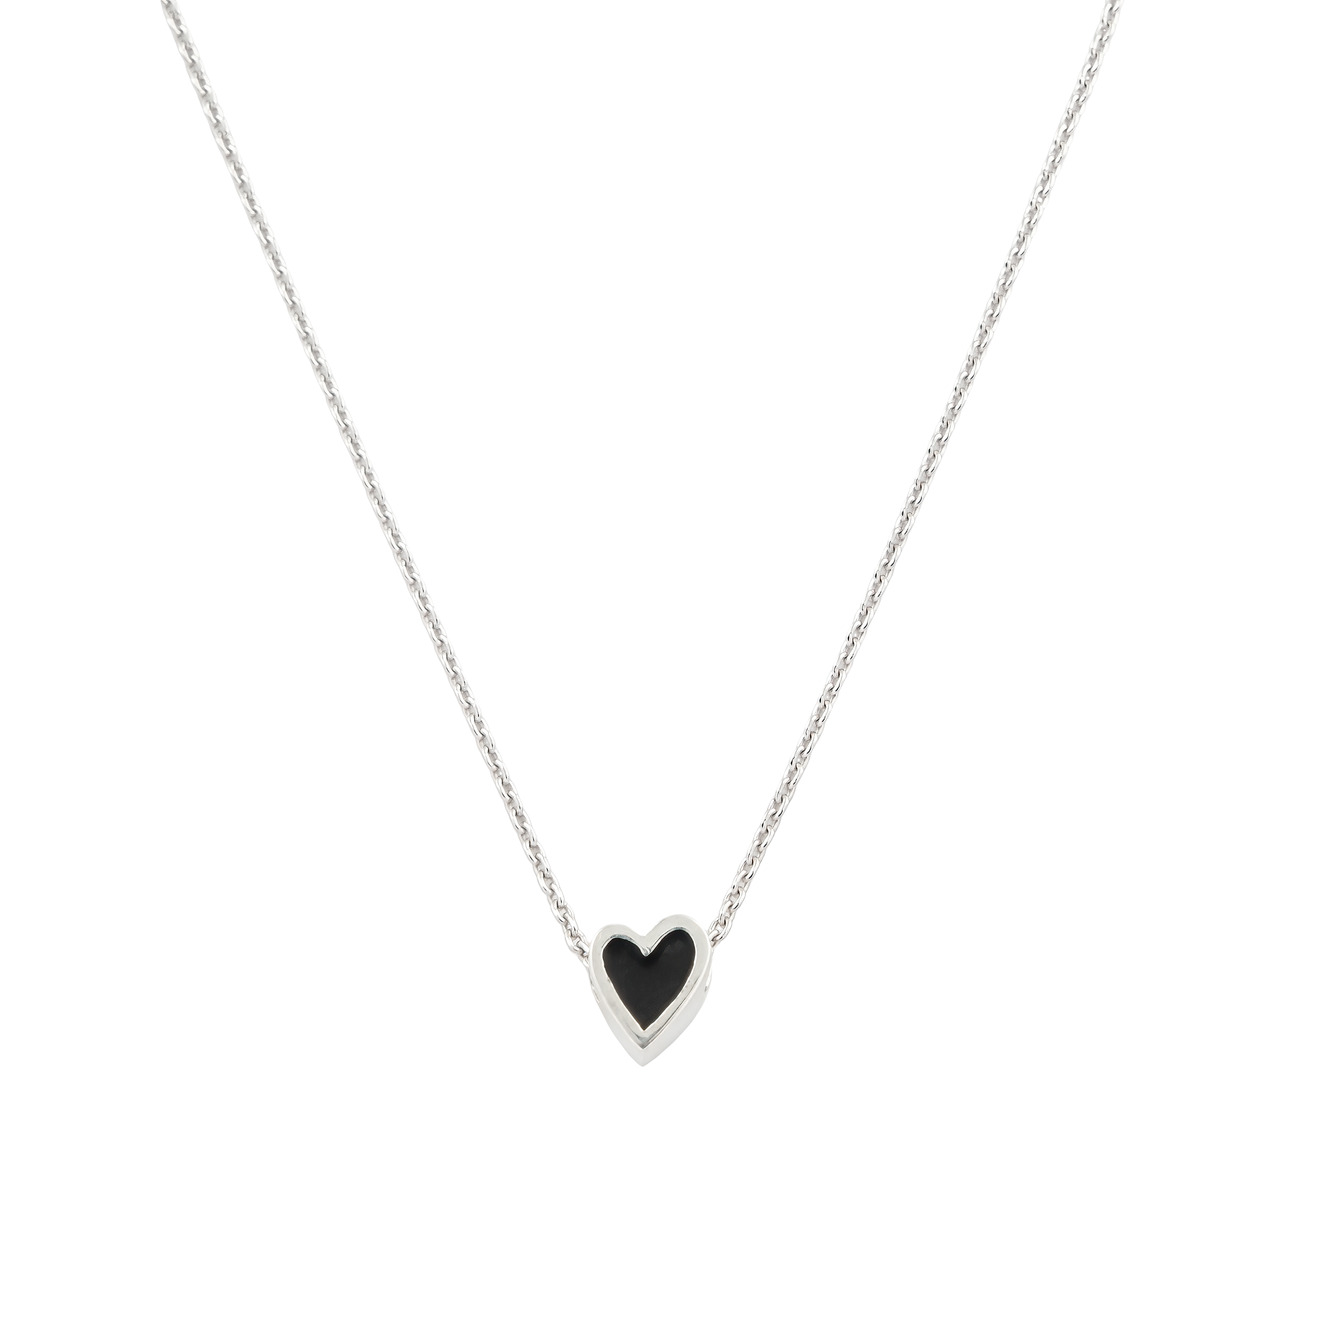 УРА jewelry подвеска сердца из серебра на цепочке с черной эмалью ура jewelry кольцо из серебра сердцем с голубой эмалью